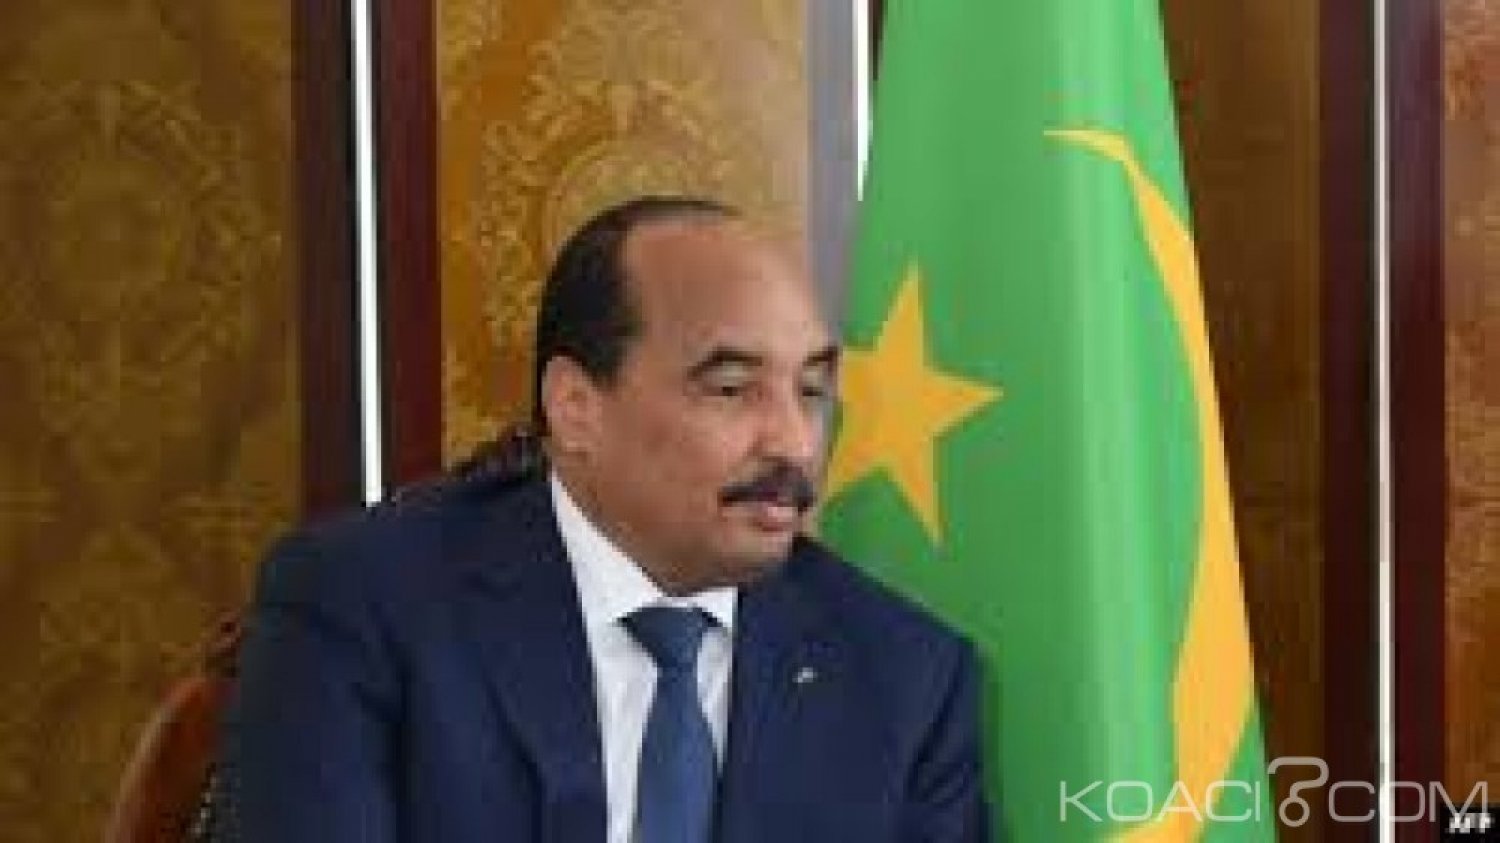 Mauritanie: Début de la campagne présidentielle ,six candidats en lice pour succéder à  Ould Abdel Aziz